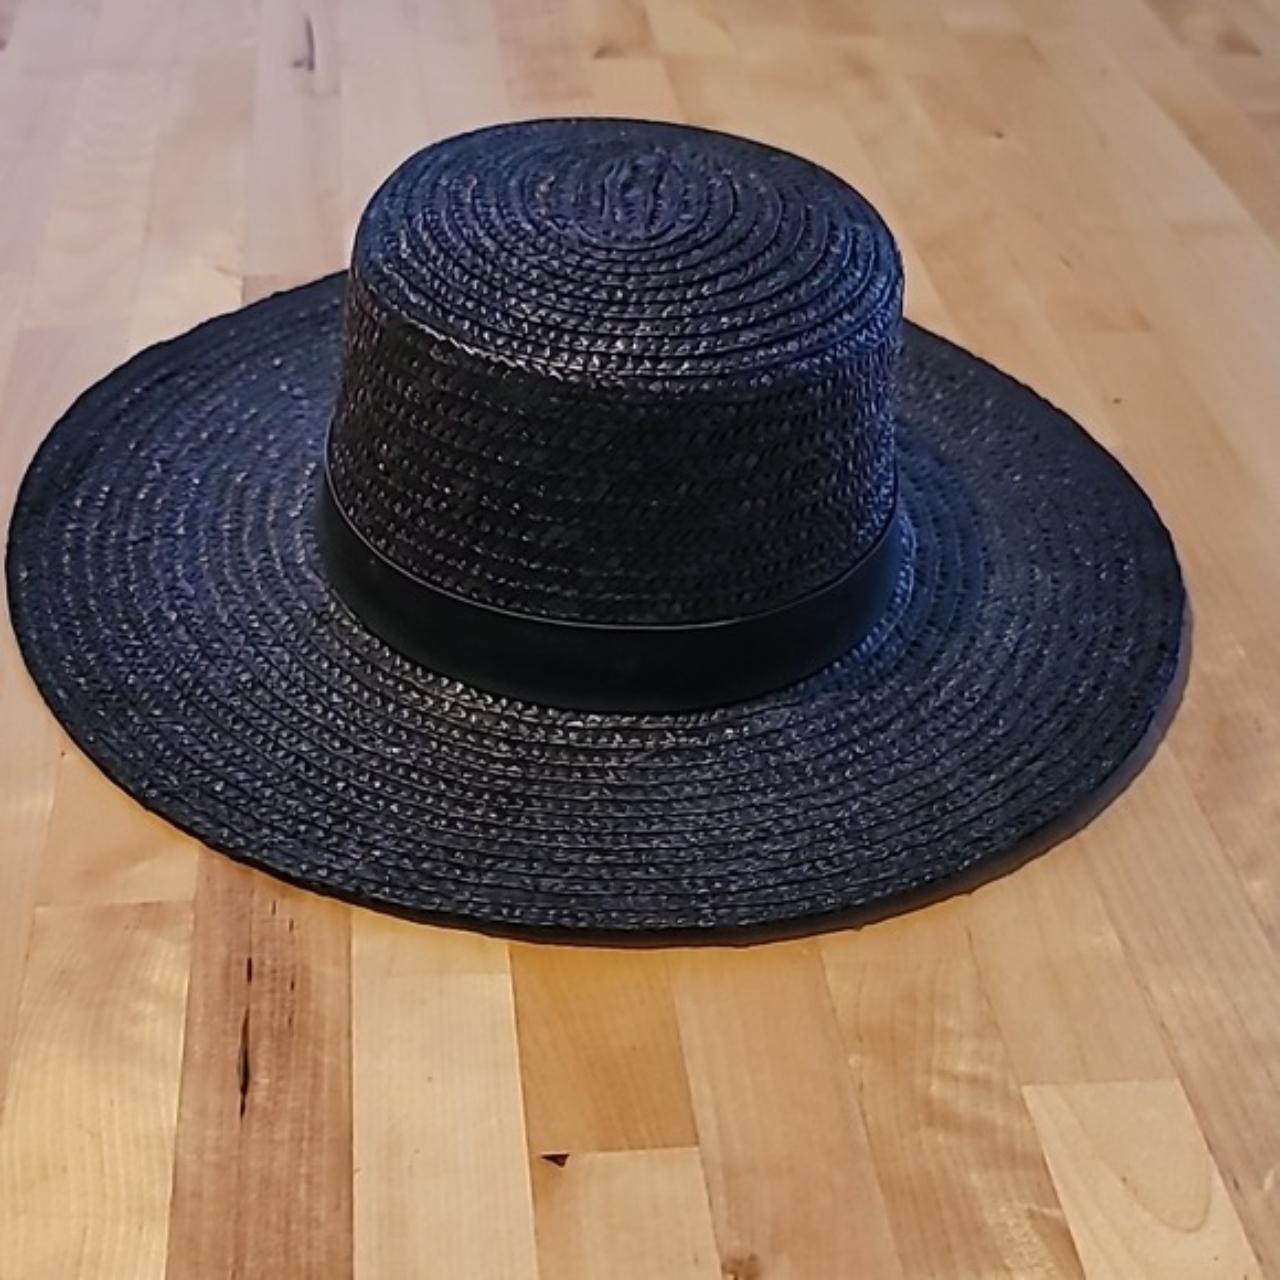 Wyeth Black Wide Brim Straw Hat Size O/S fits all,... - Depop